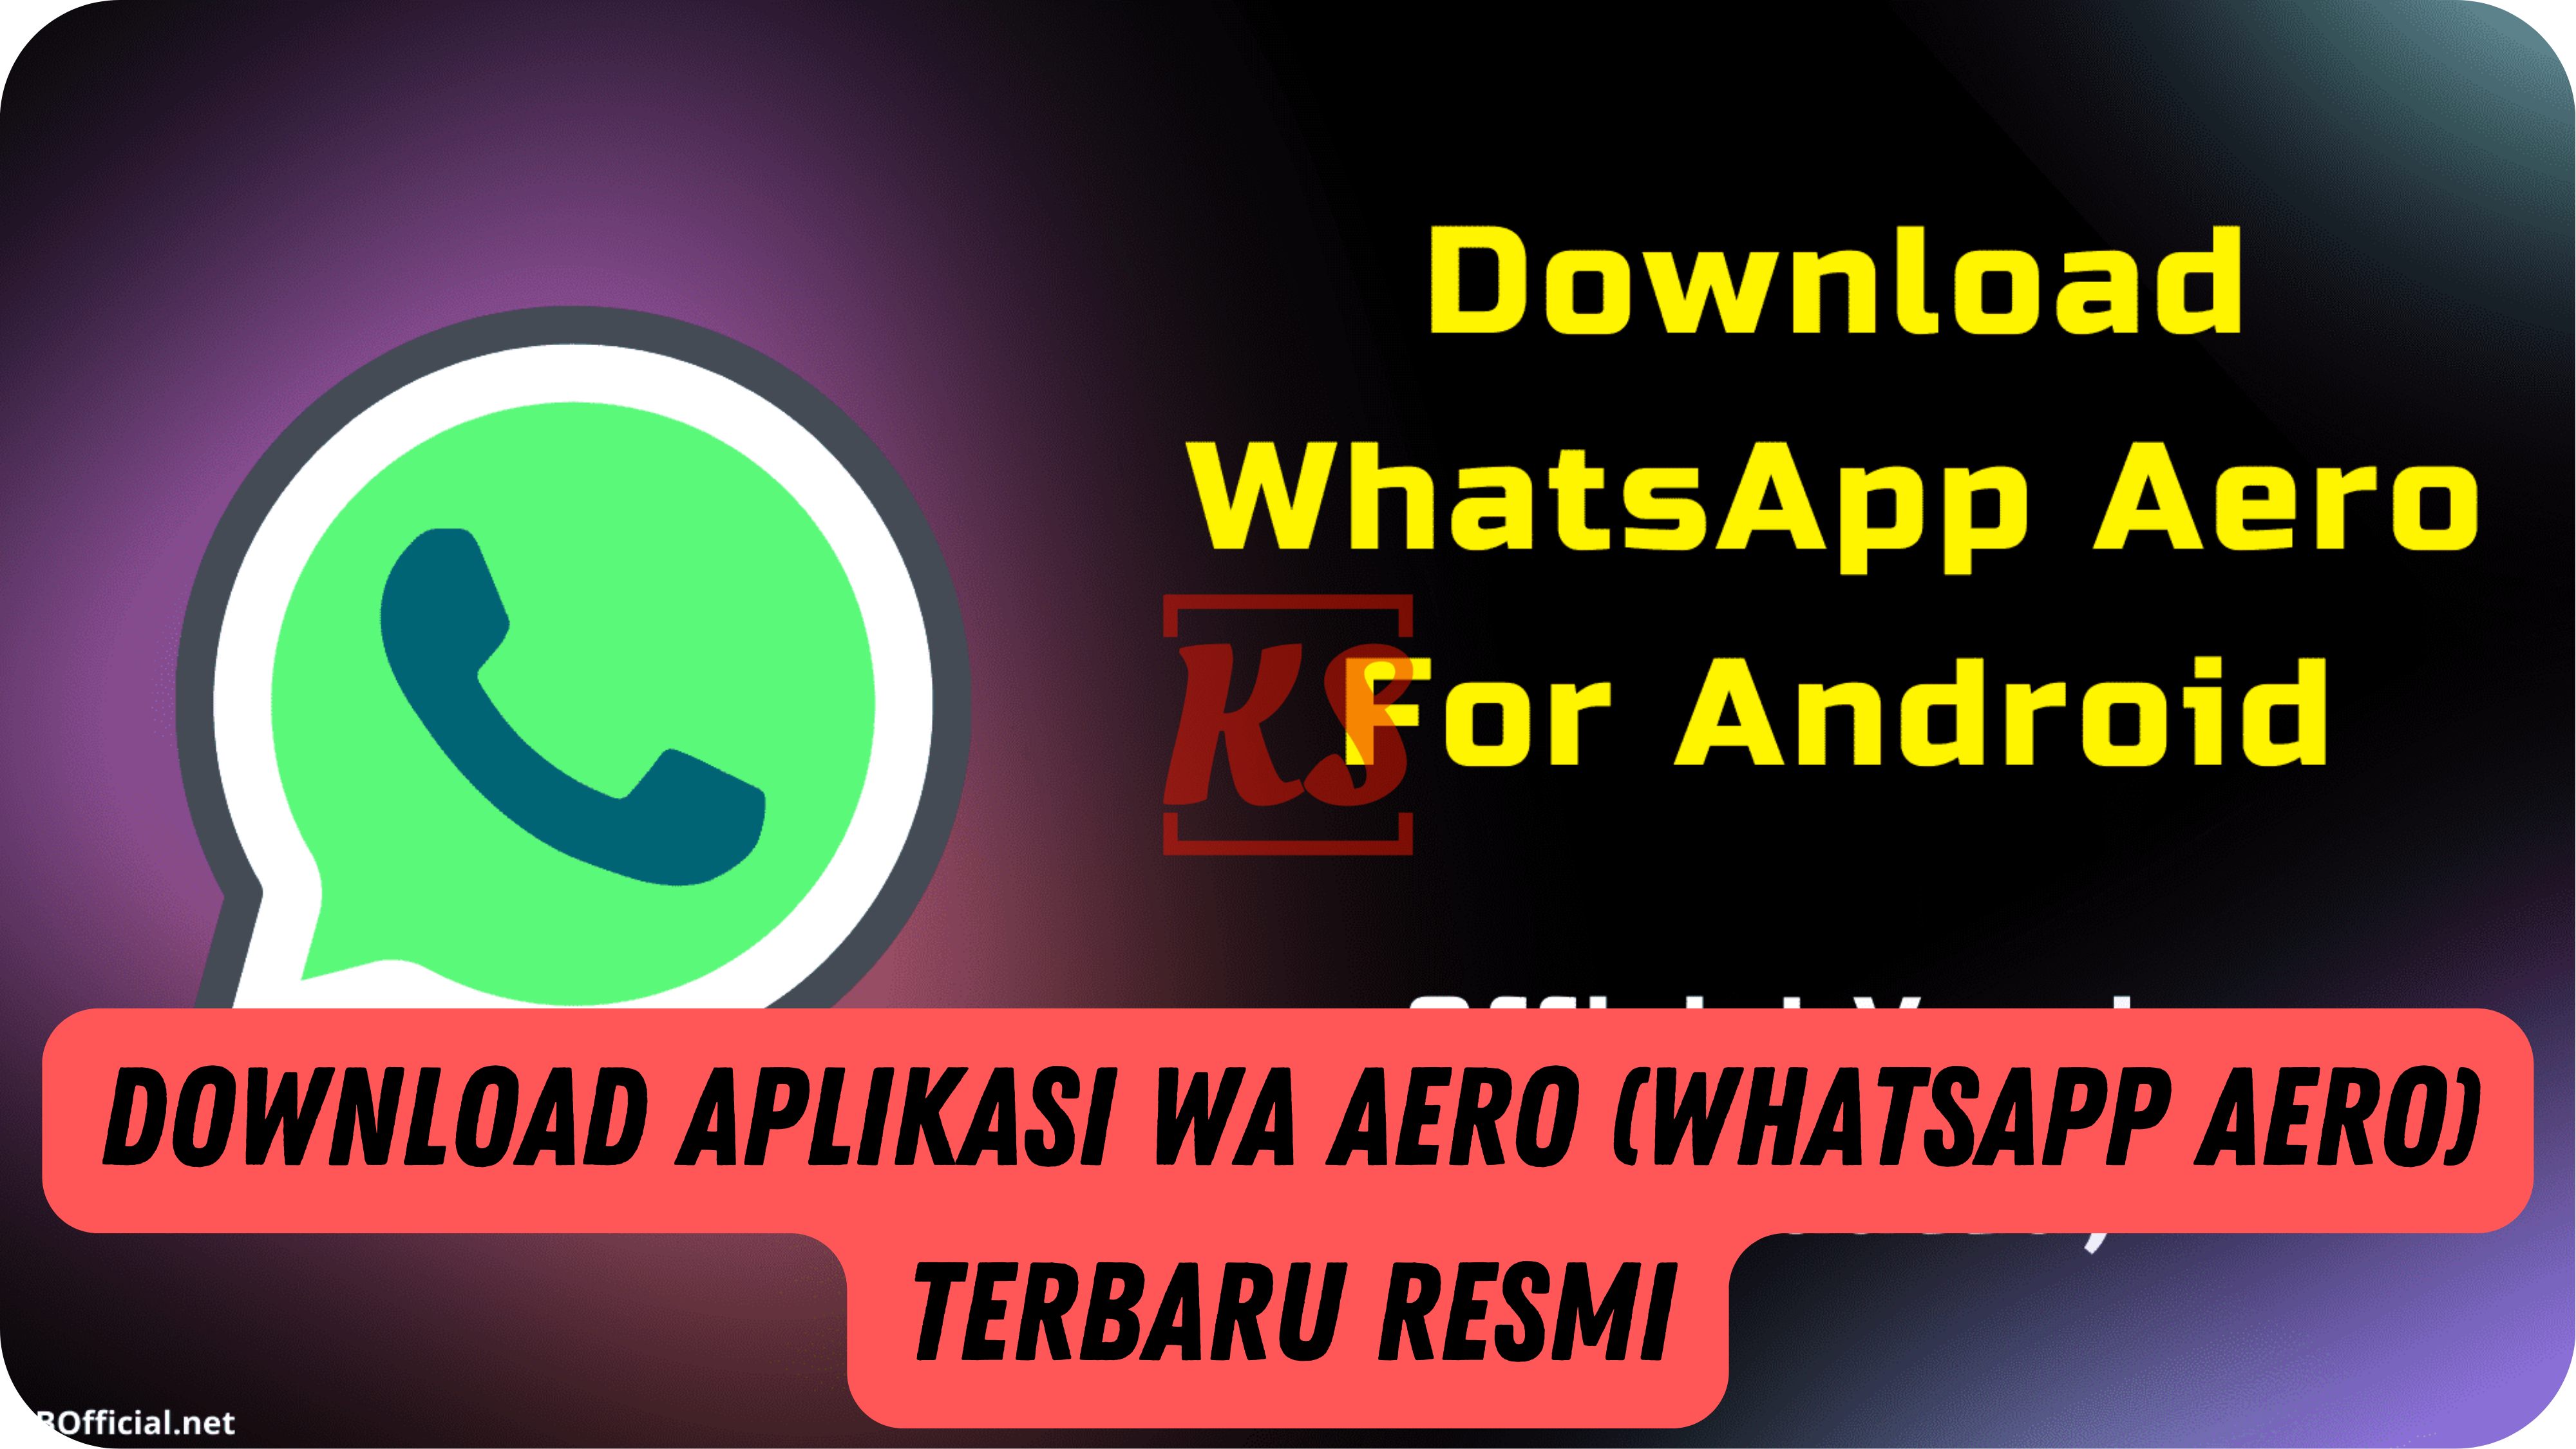 Download Aplikasi WA Aero (WhatsApp Aero) Terbaru Resmi